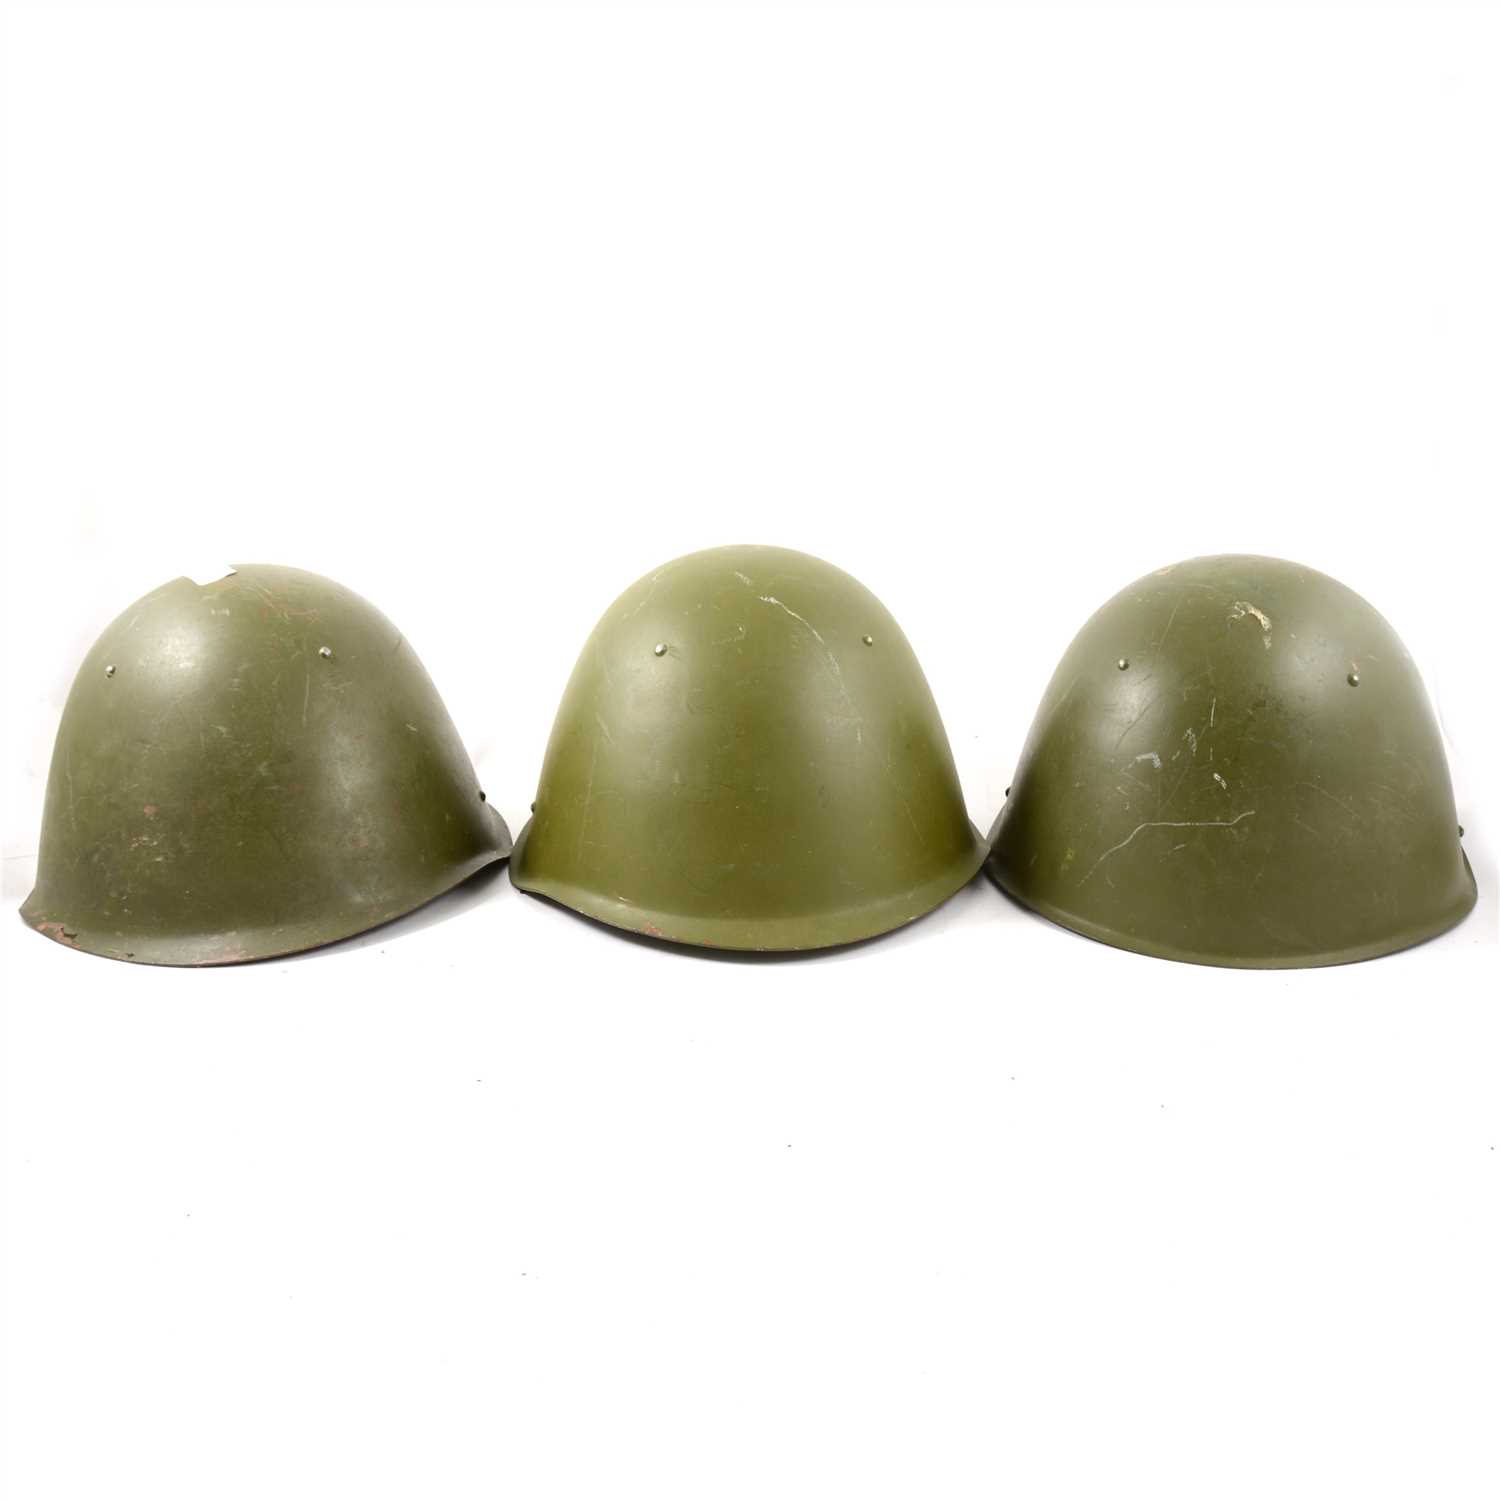 Lot 150 - Three Russian army steel helmets.